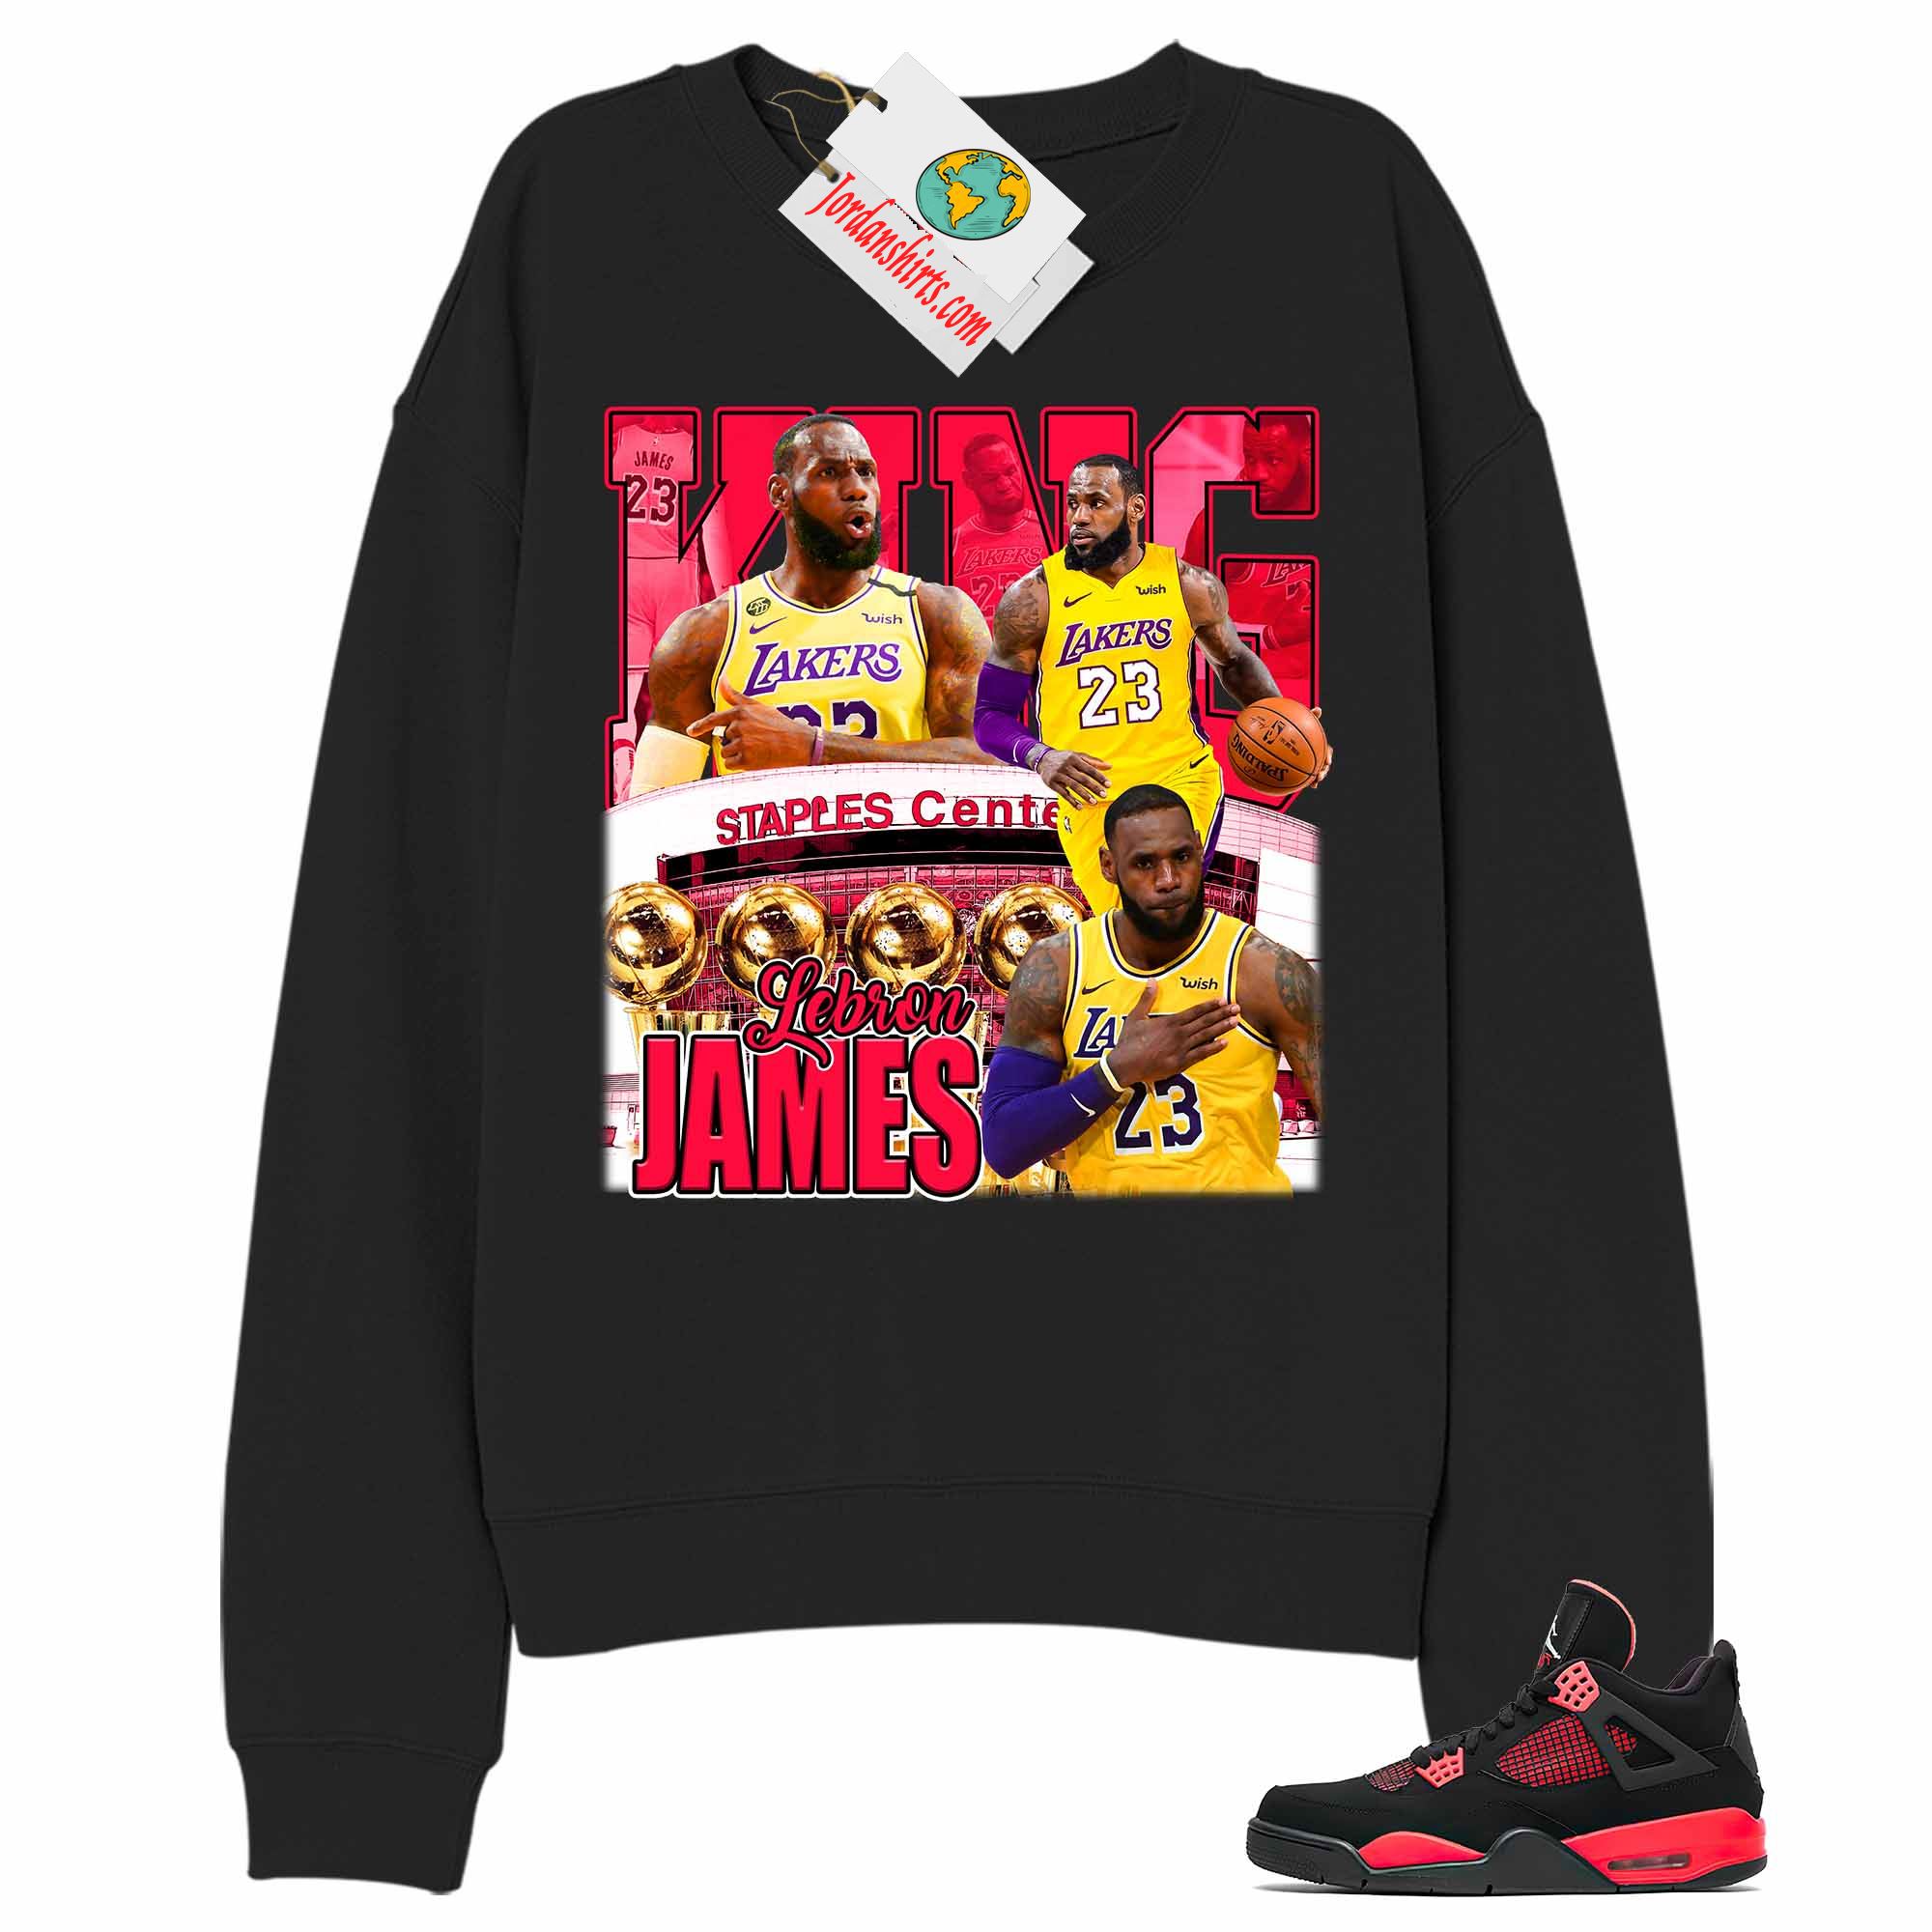 Jordan 4 Sweatshirt, Vintage Basketball Lebron James Black Sweatshirt Air Jordan 4 Red Thunder 4s Size Up To 5xl